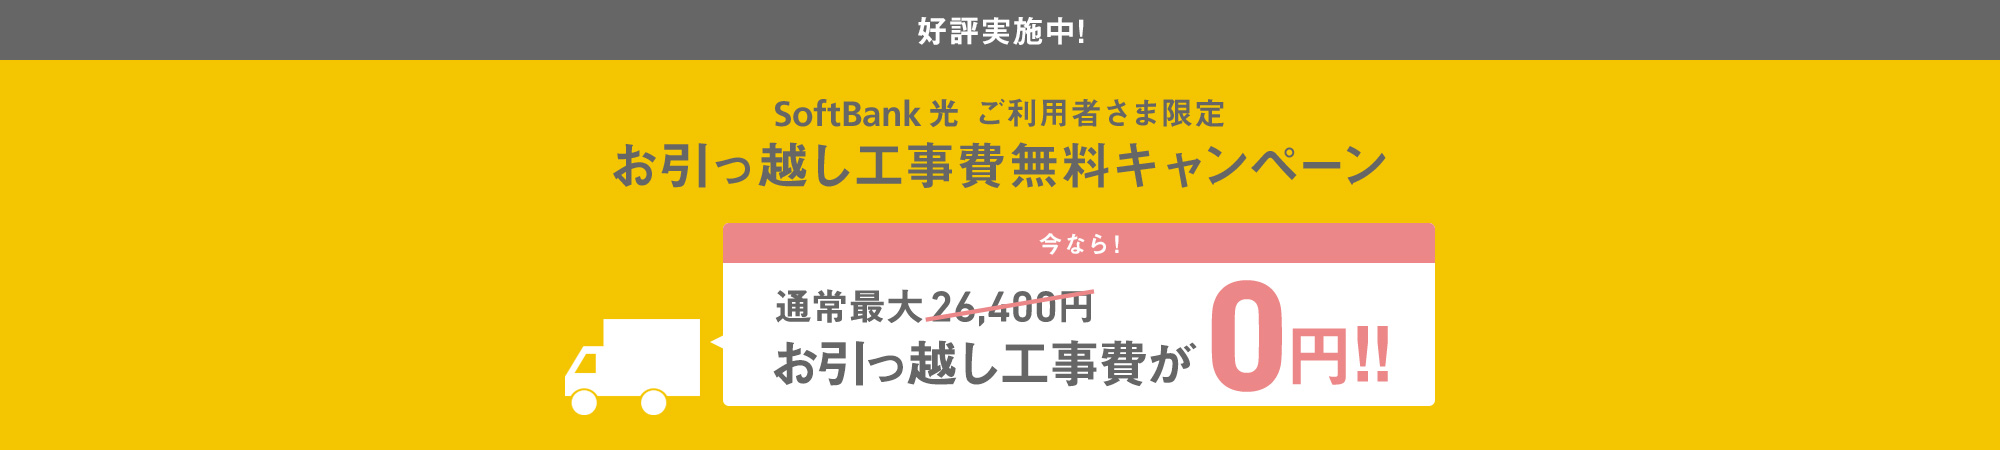 Softbank 光 引っ越しのお手続き インターネット 固定電話 ソフトバンク